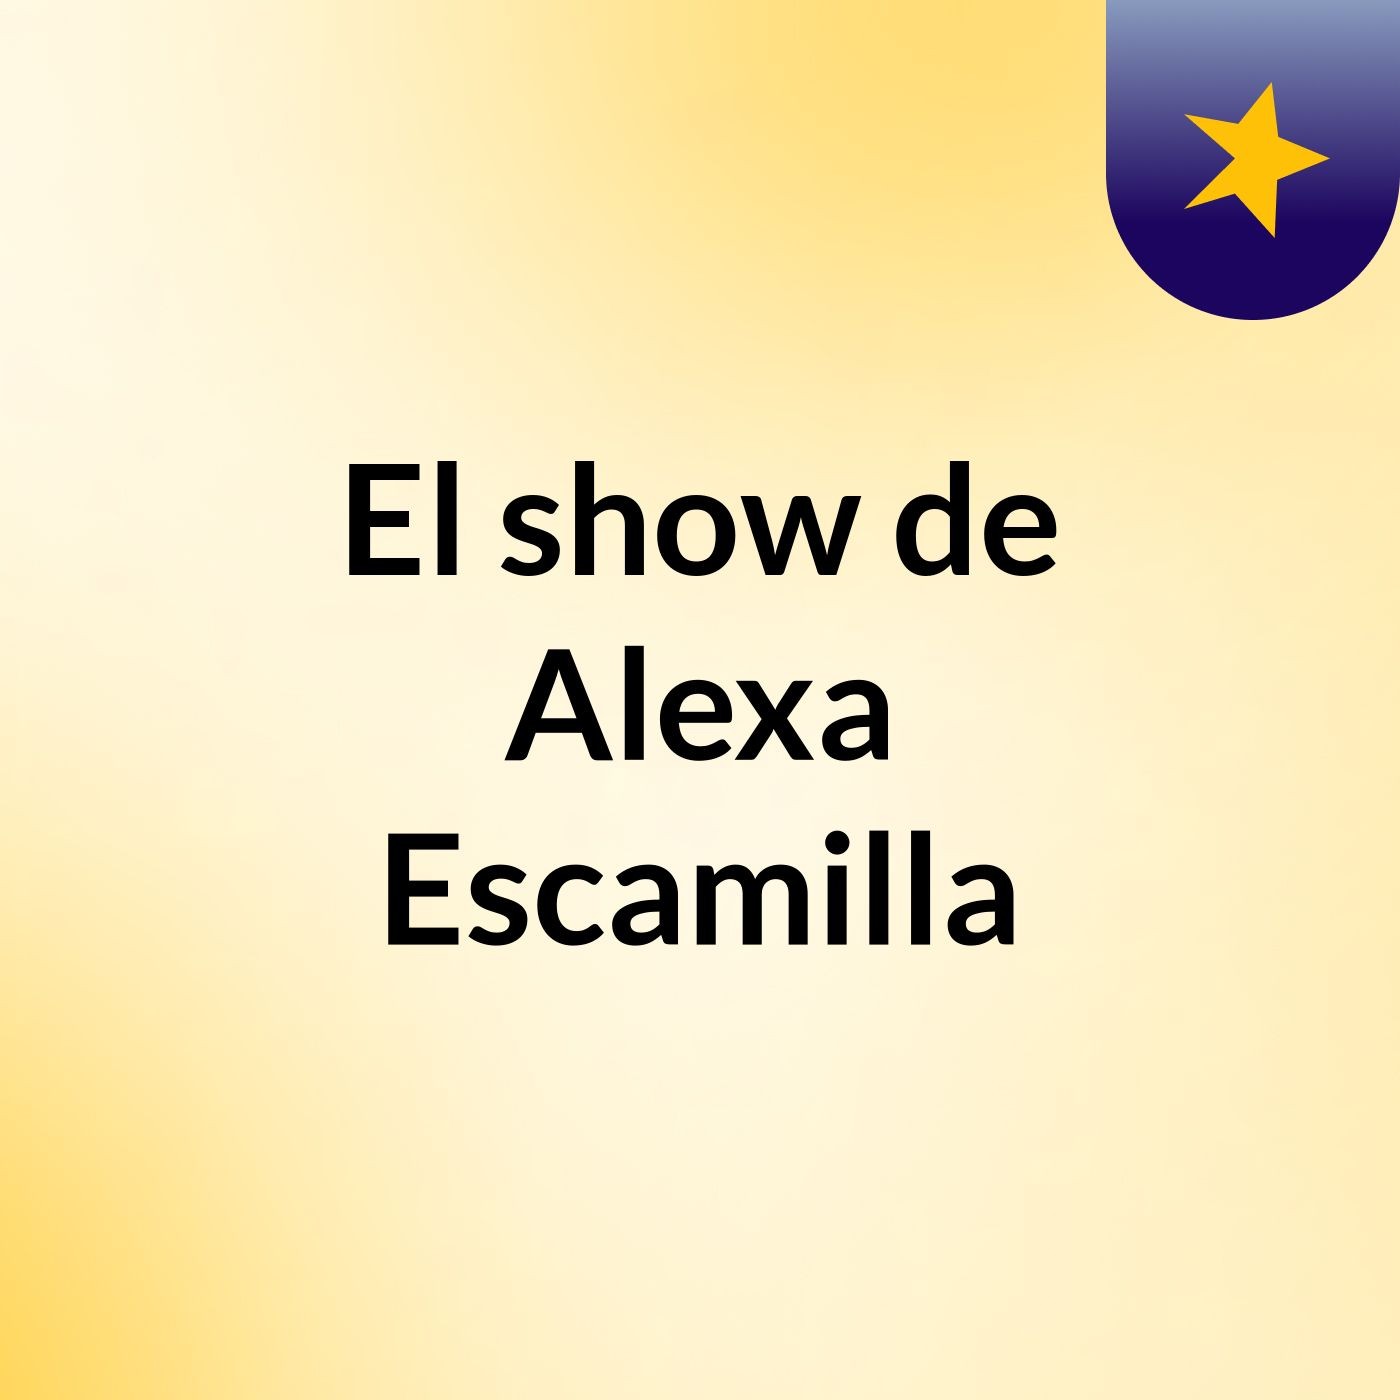 El show de Alexa Escamilla